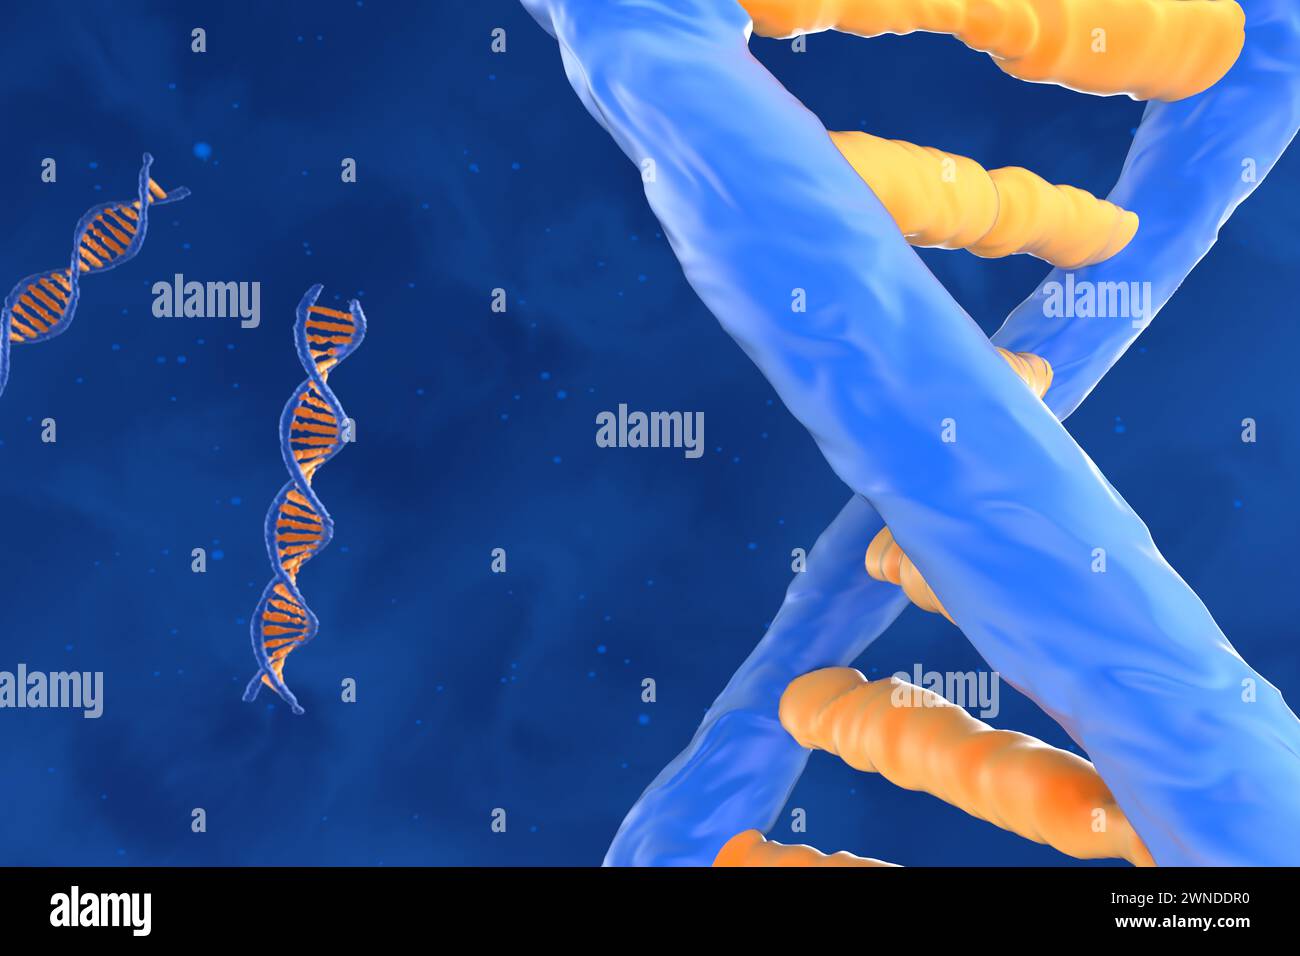 Molécule d'ADN avec la double spirale polynucléotidique - gros plan vue illustration 3D. Banque D'Images